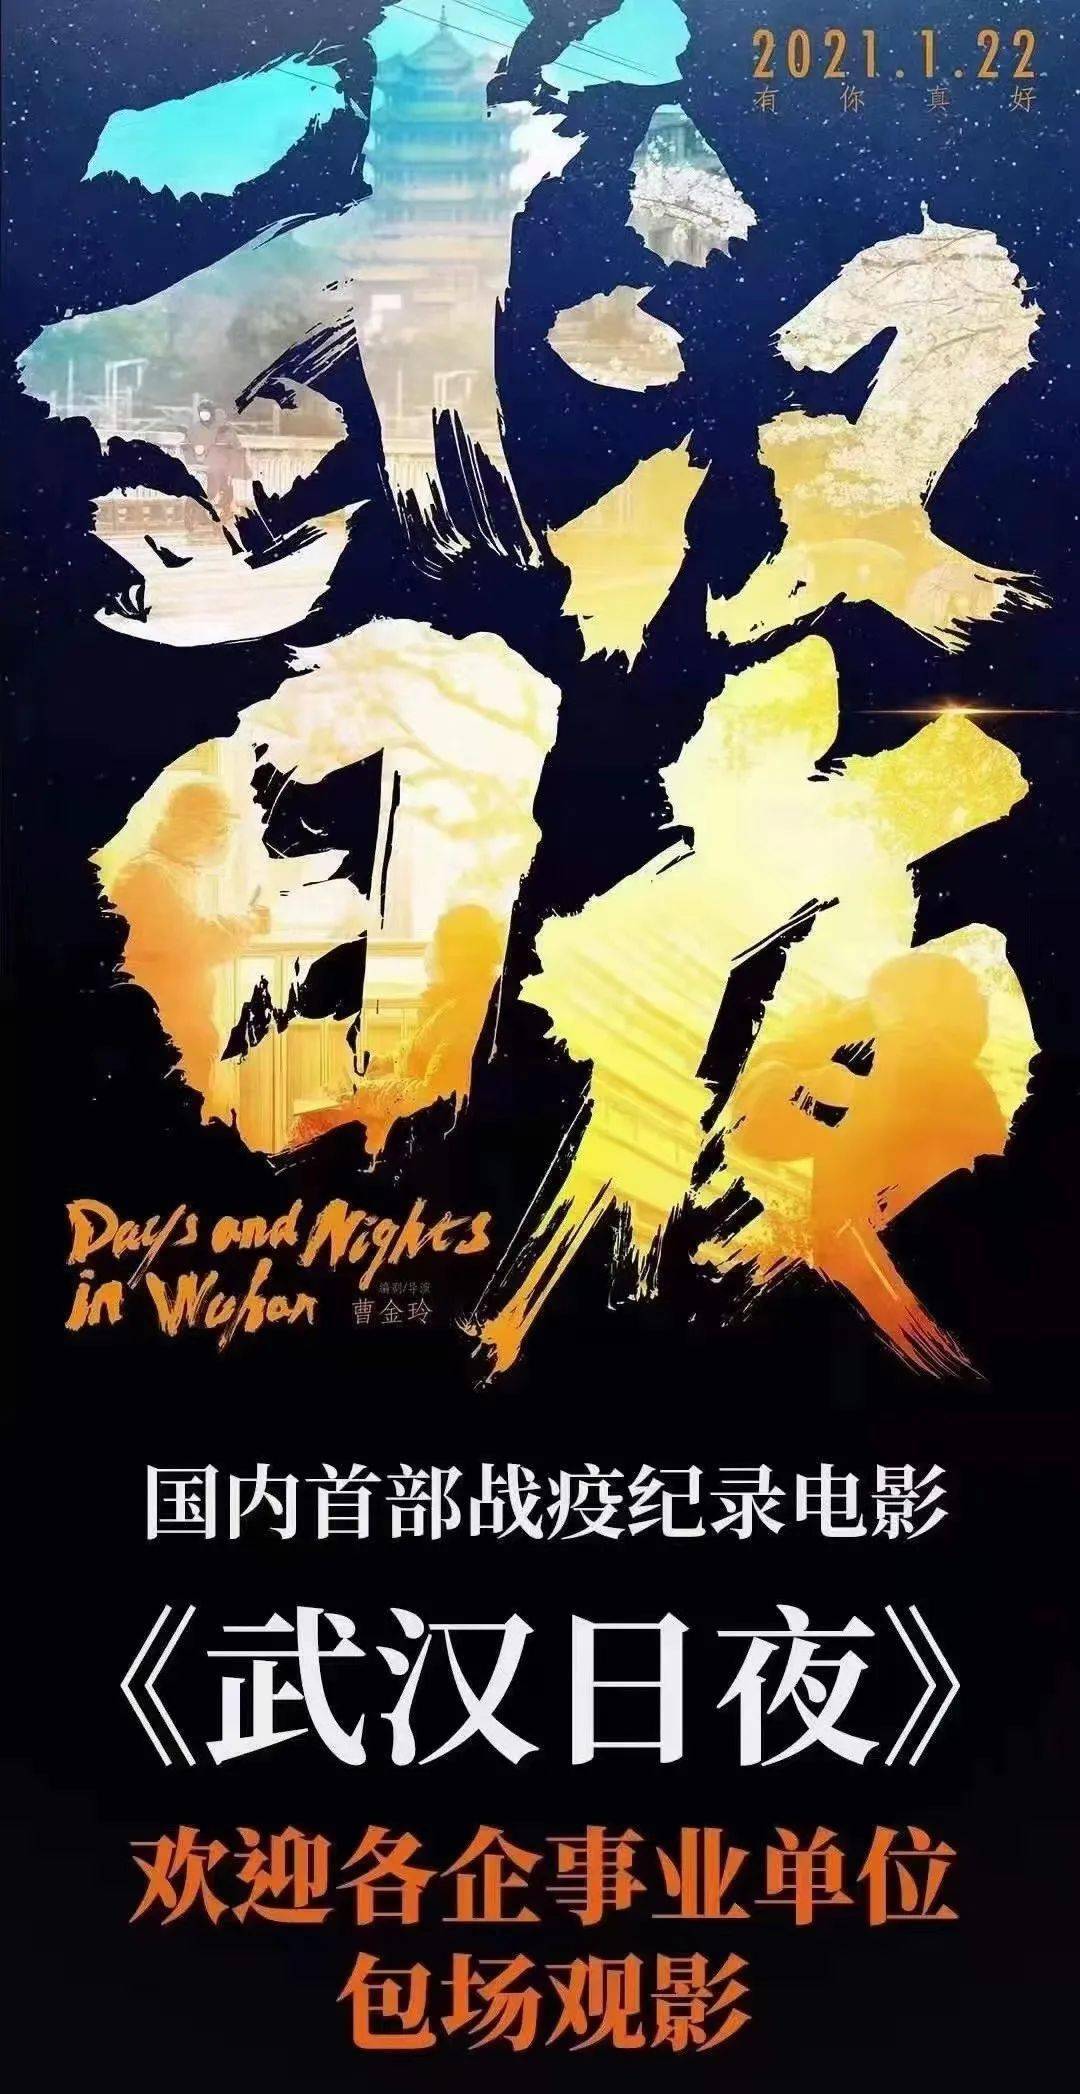 1月22日上映|欢迎包场《武汉日夜》国内首部战疫记录电影!